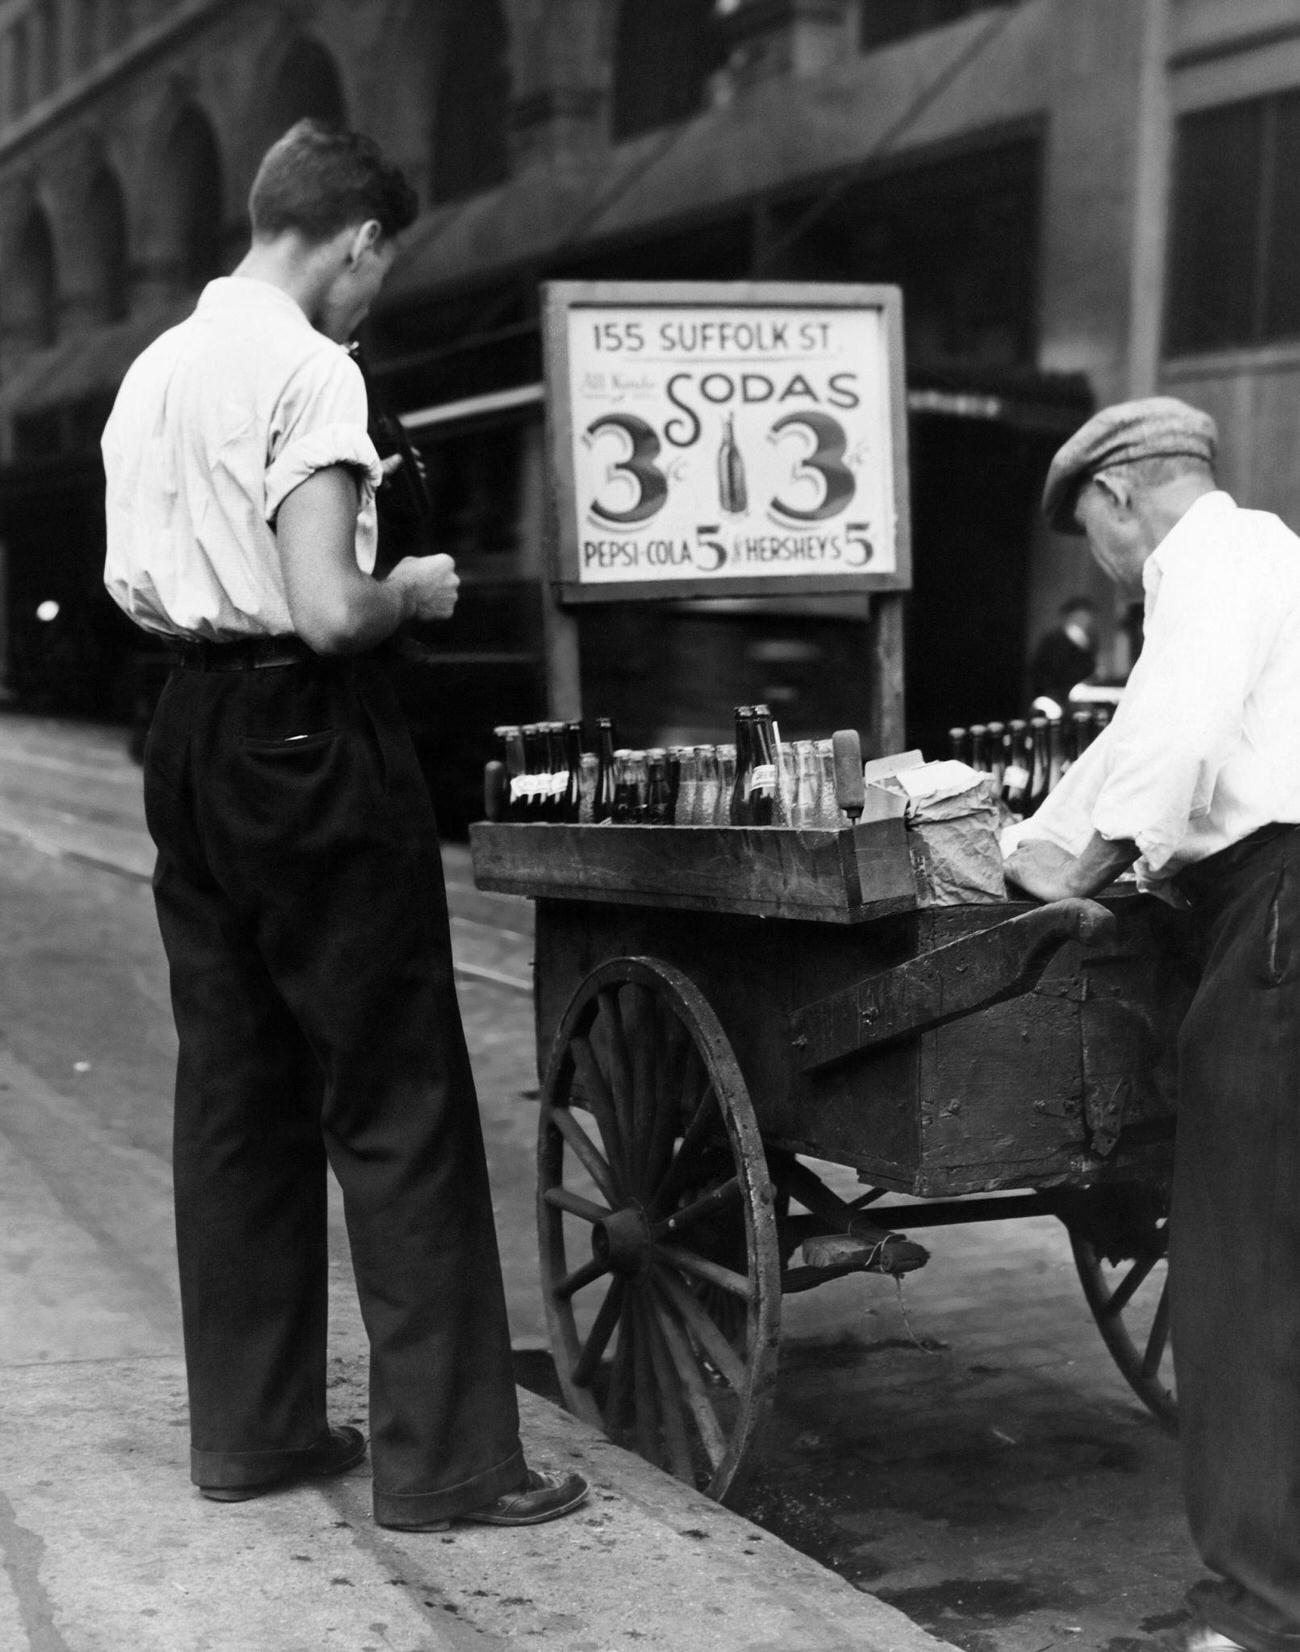 1930s street vendor in New York City selling sodas, including Pepsi-Cola.